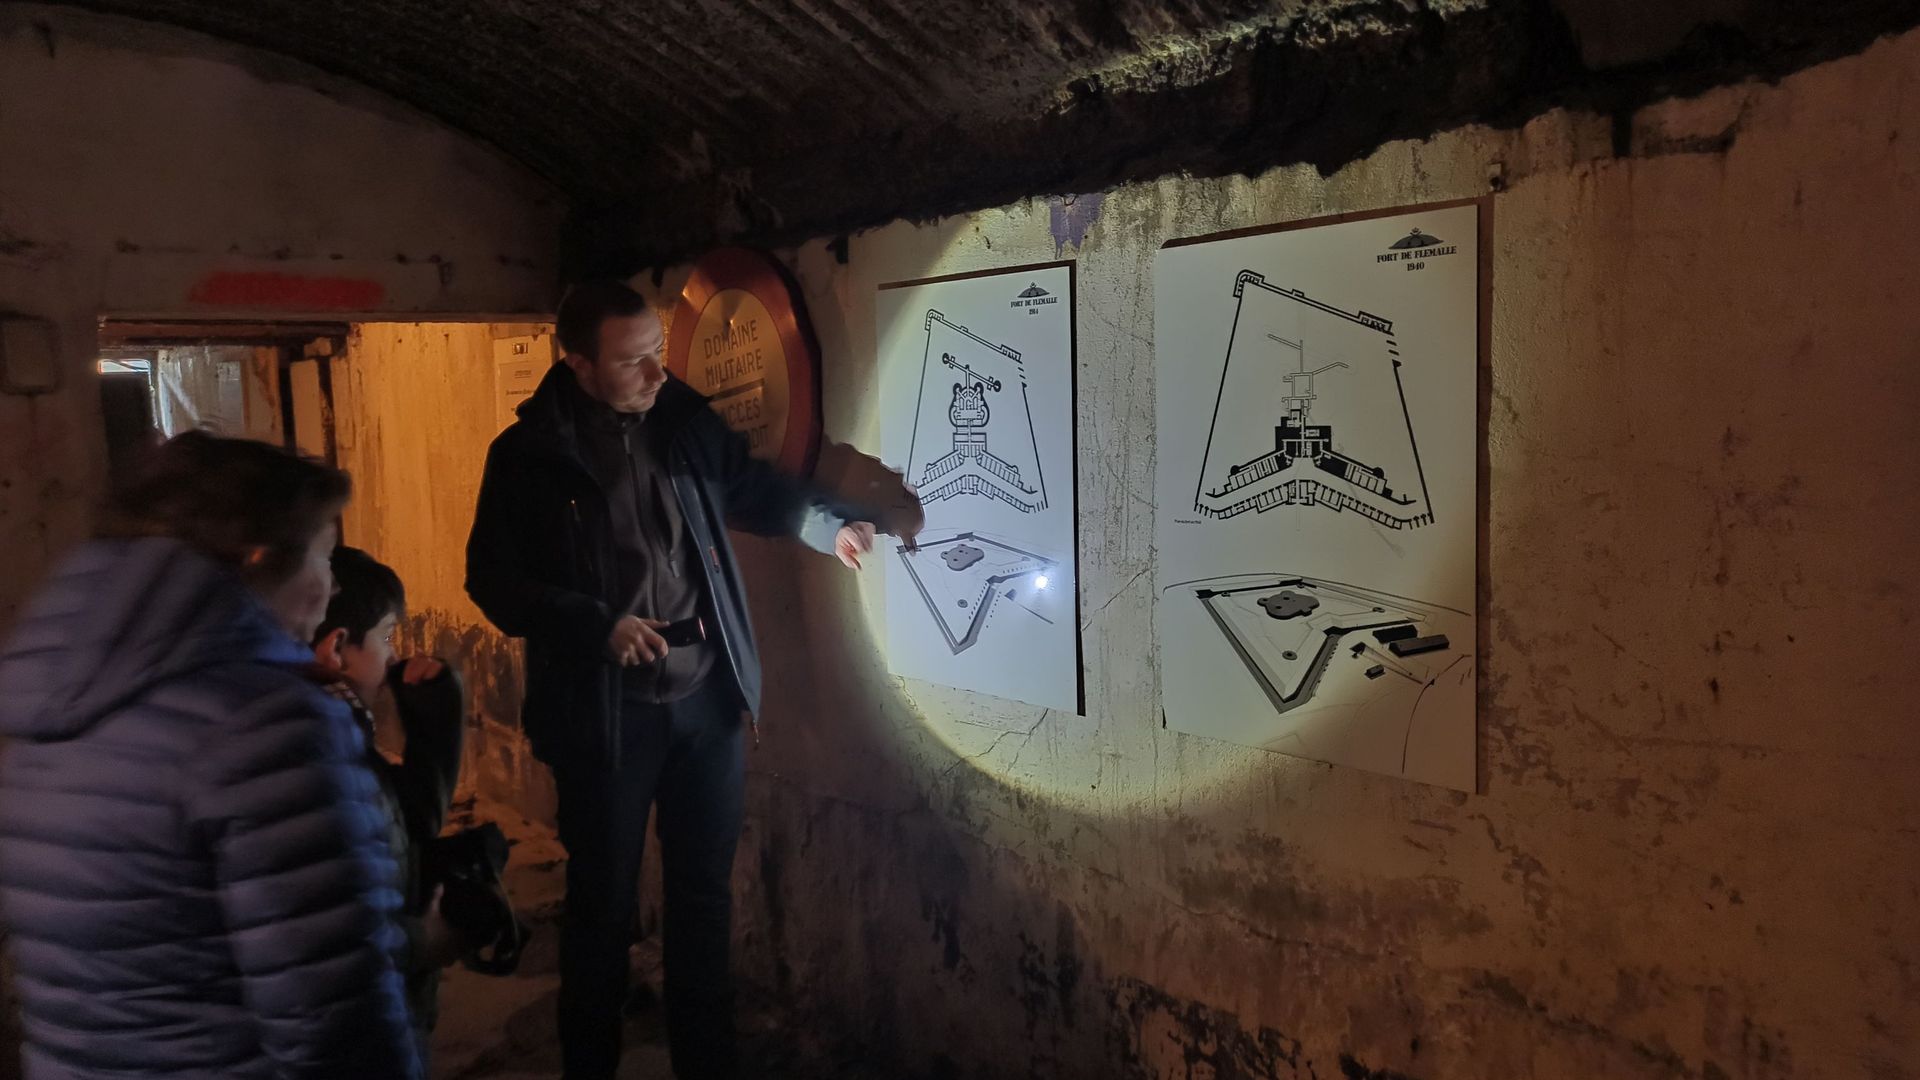 Explication sur l'architecture souterraine du Fort.